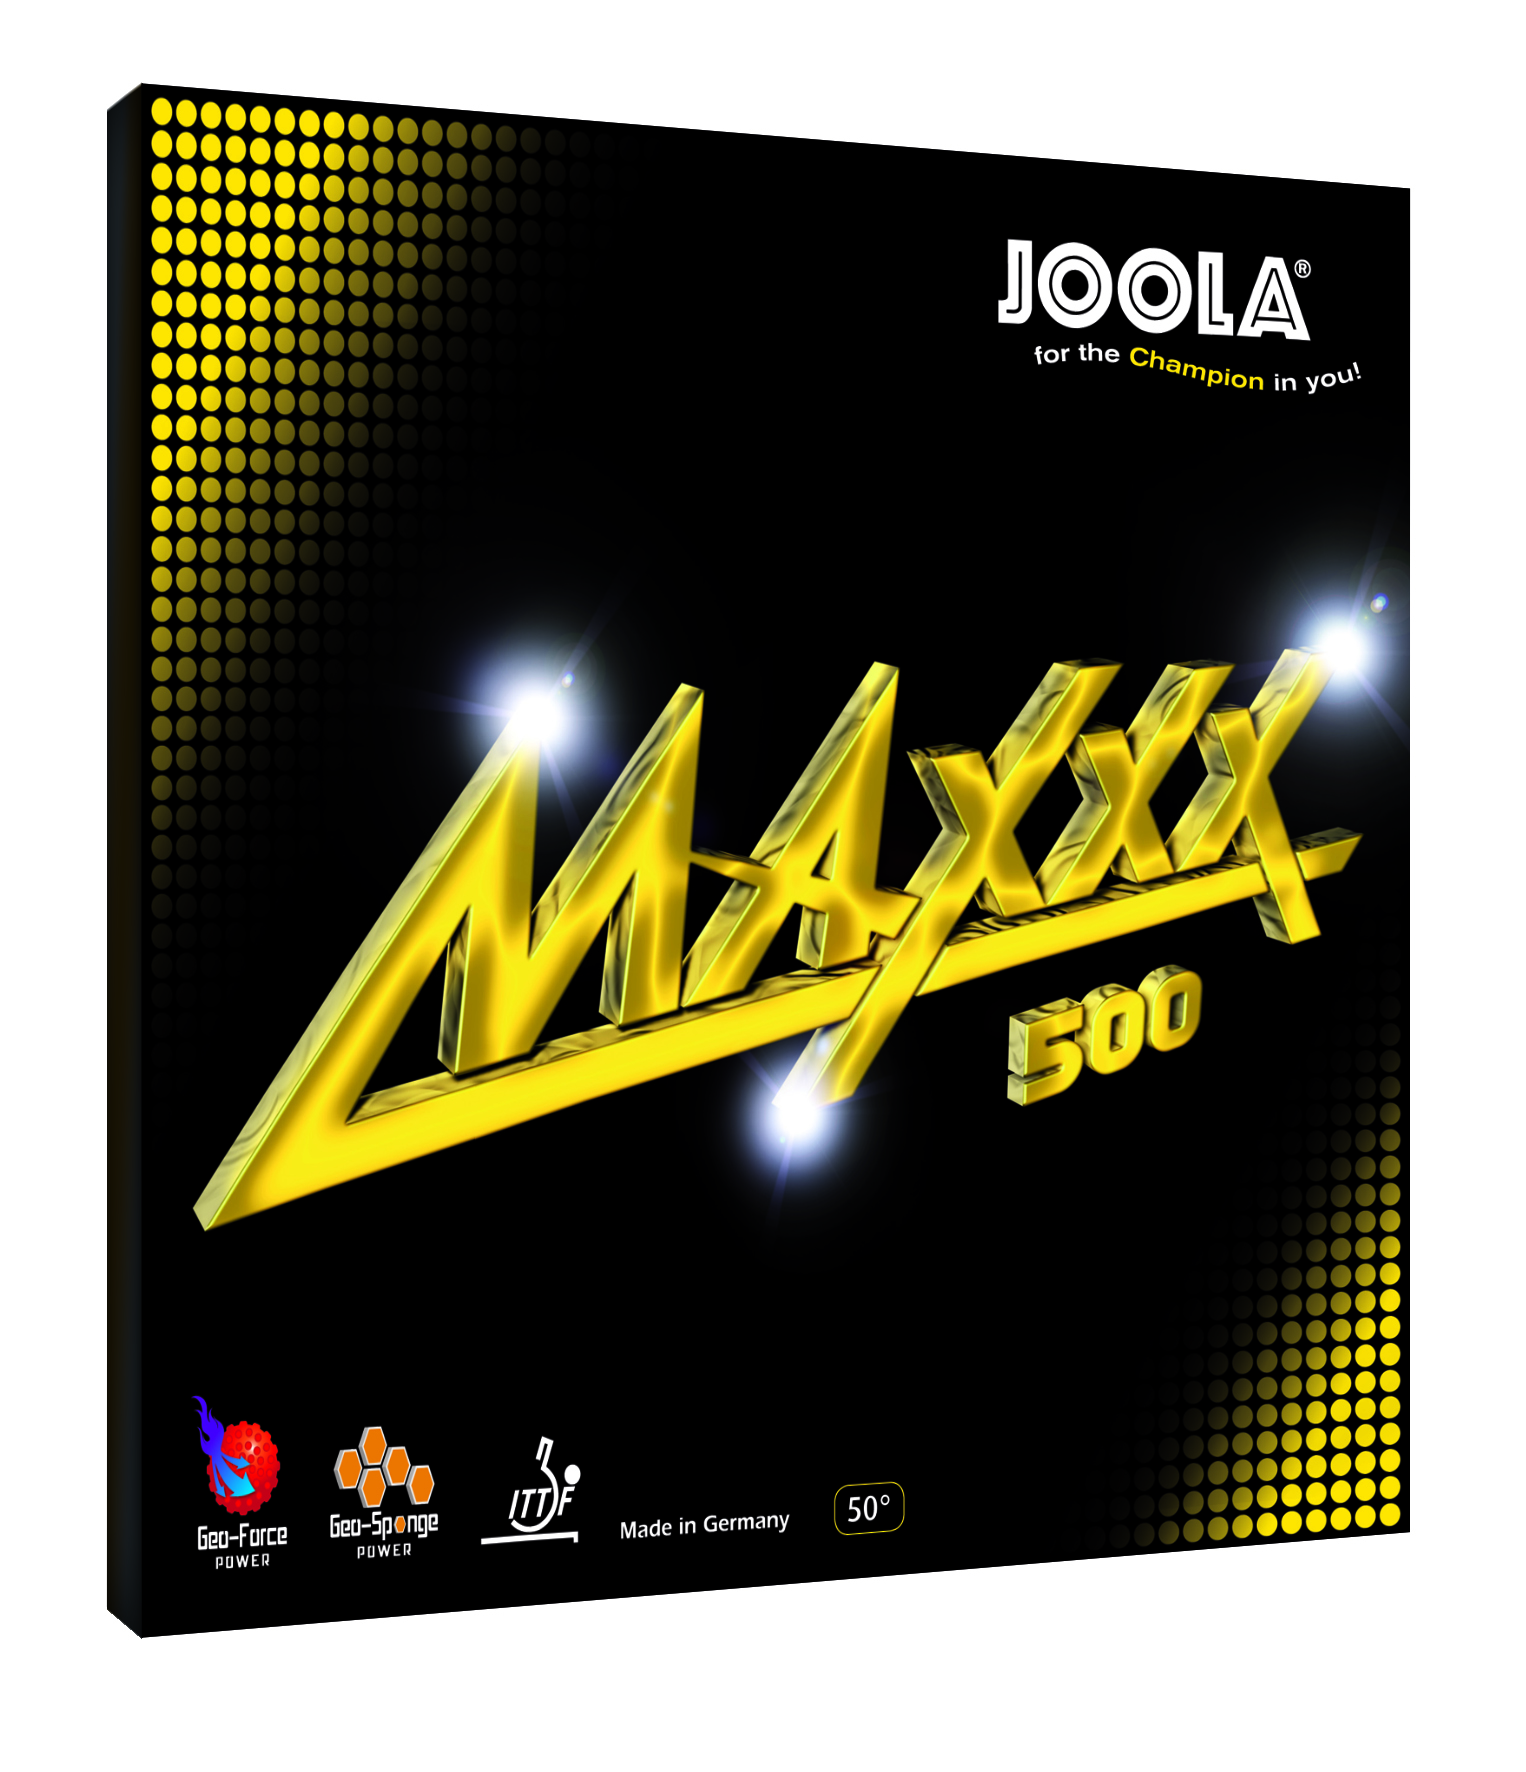 Joola Maxxx 500 - Tischtennis Belag von Joola